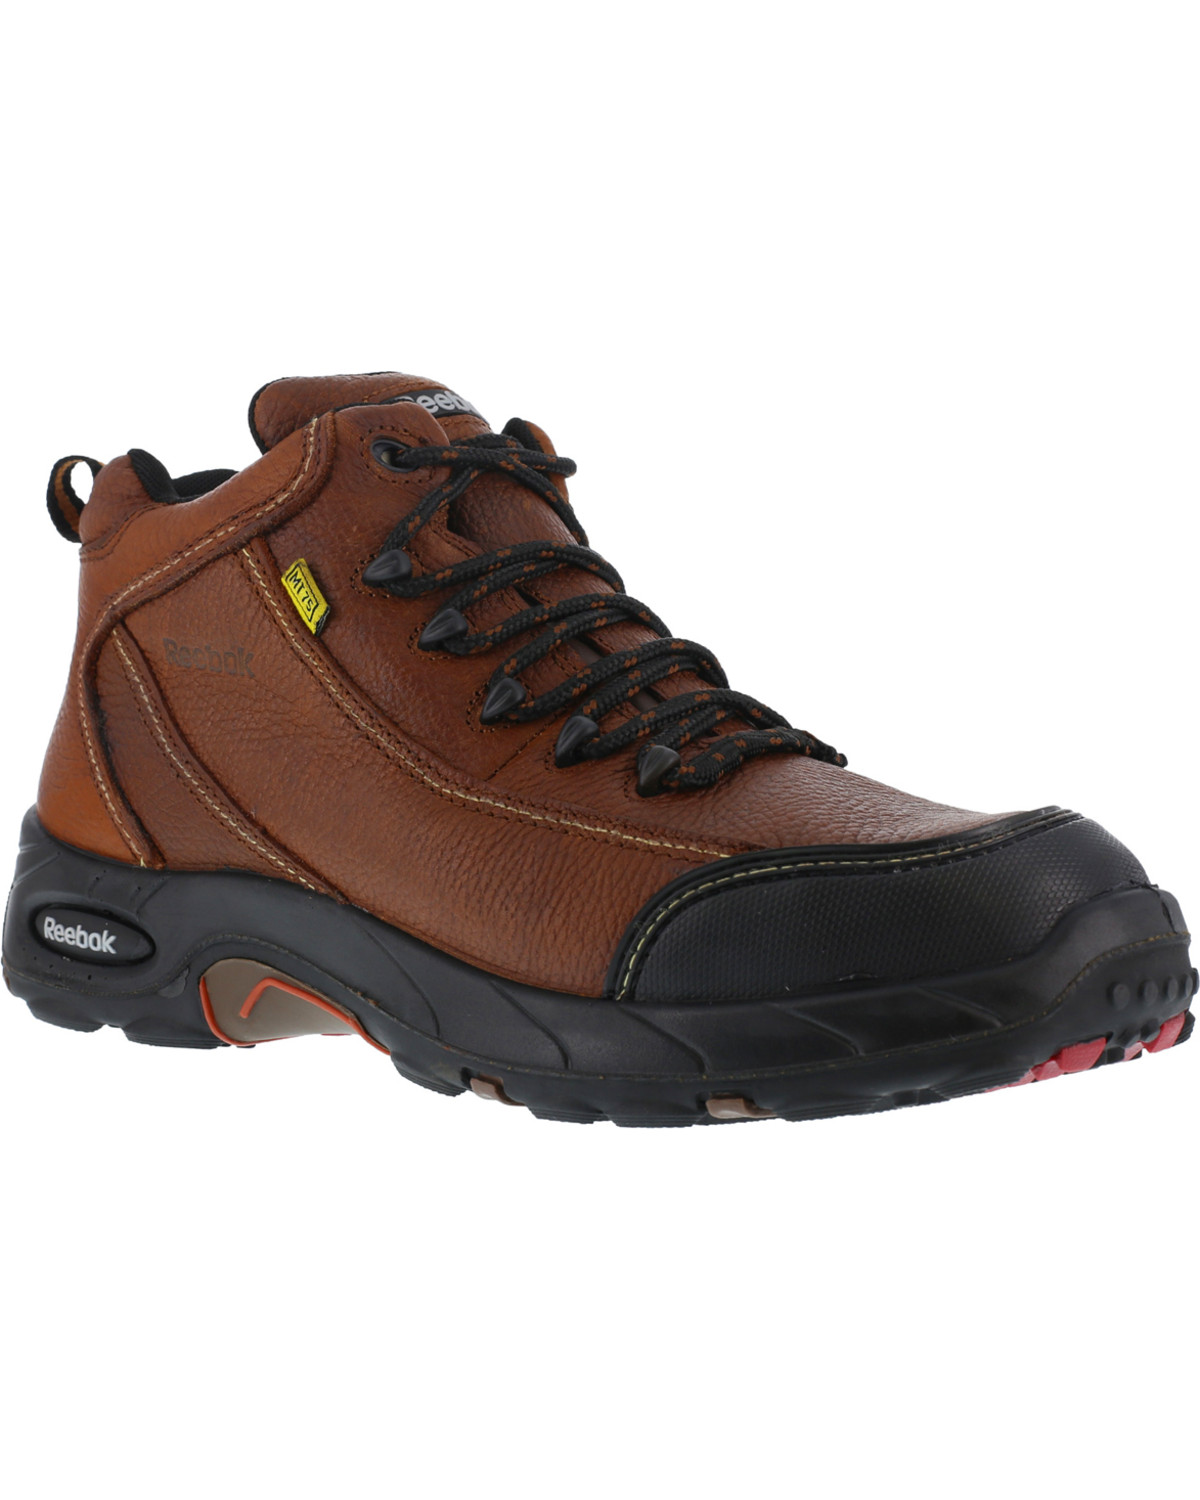 Reebok Men's Tiahawk Sport Hiker Met Guard Work Boots - Composite Toe